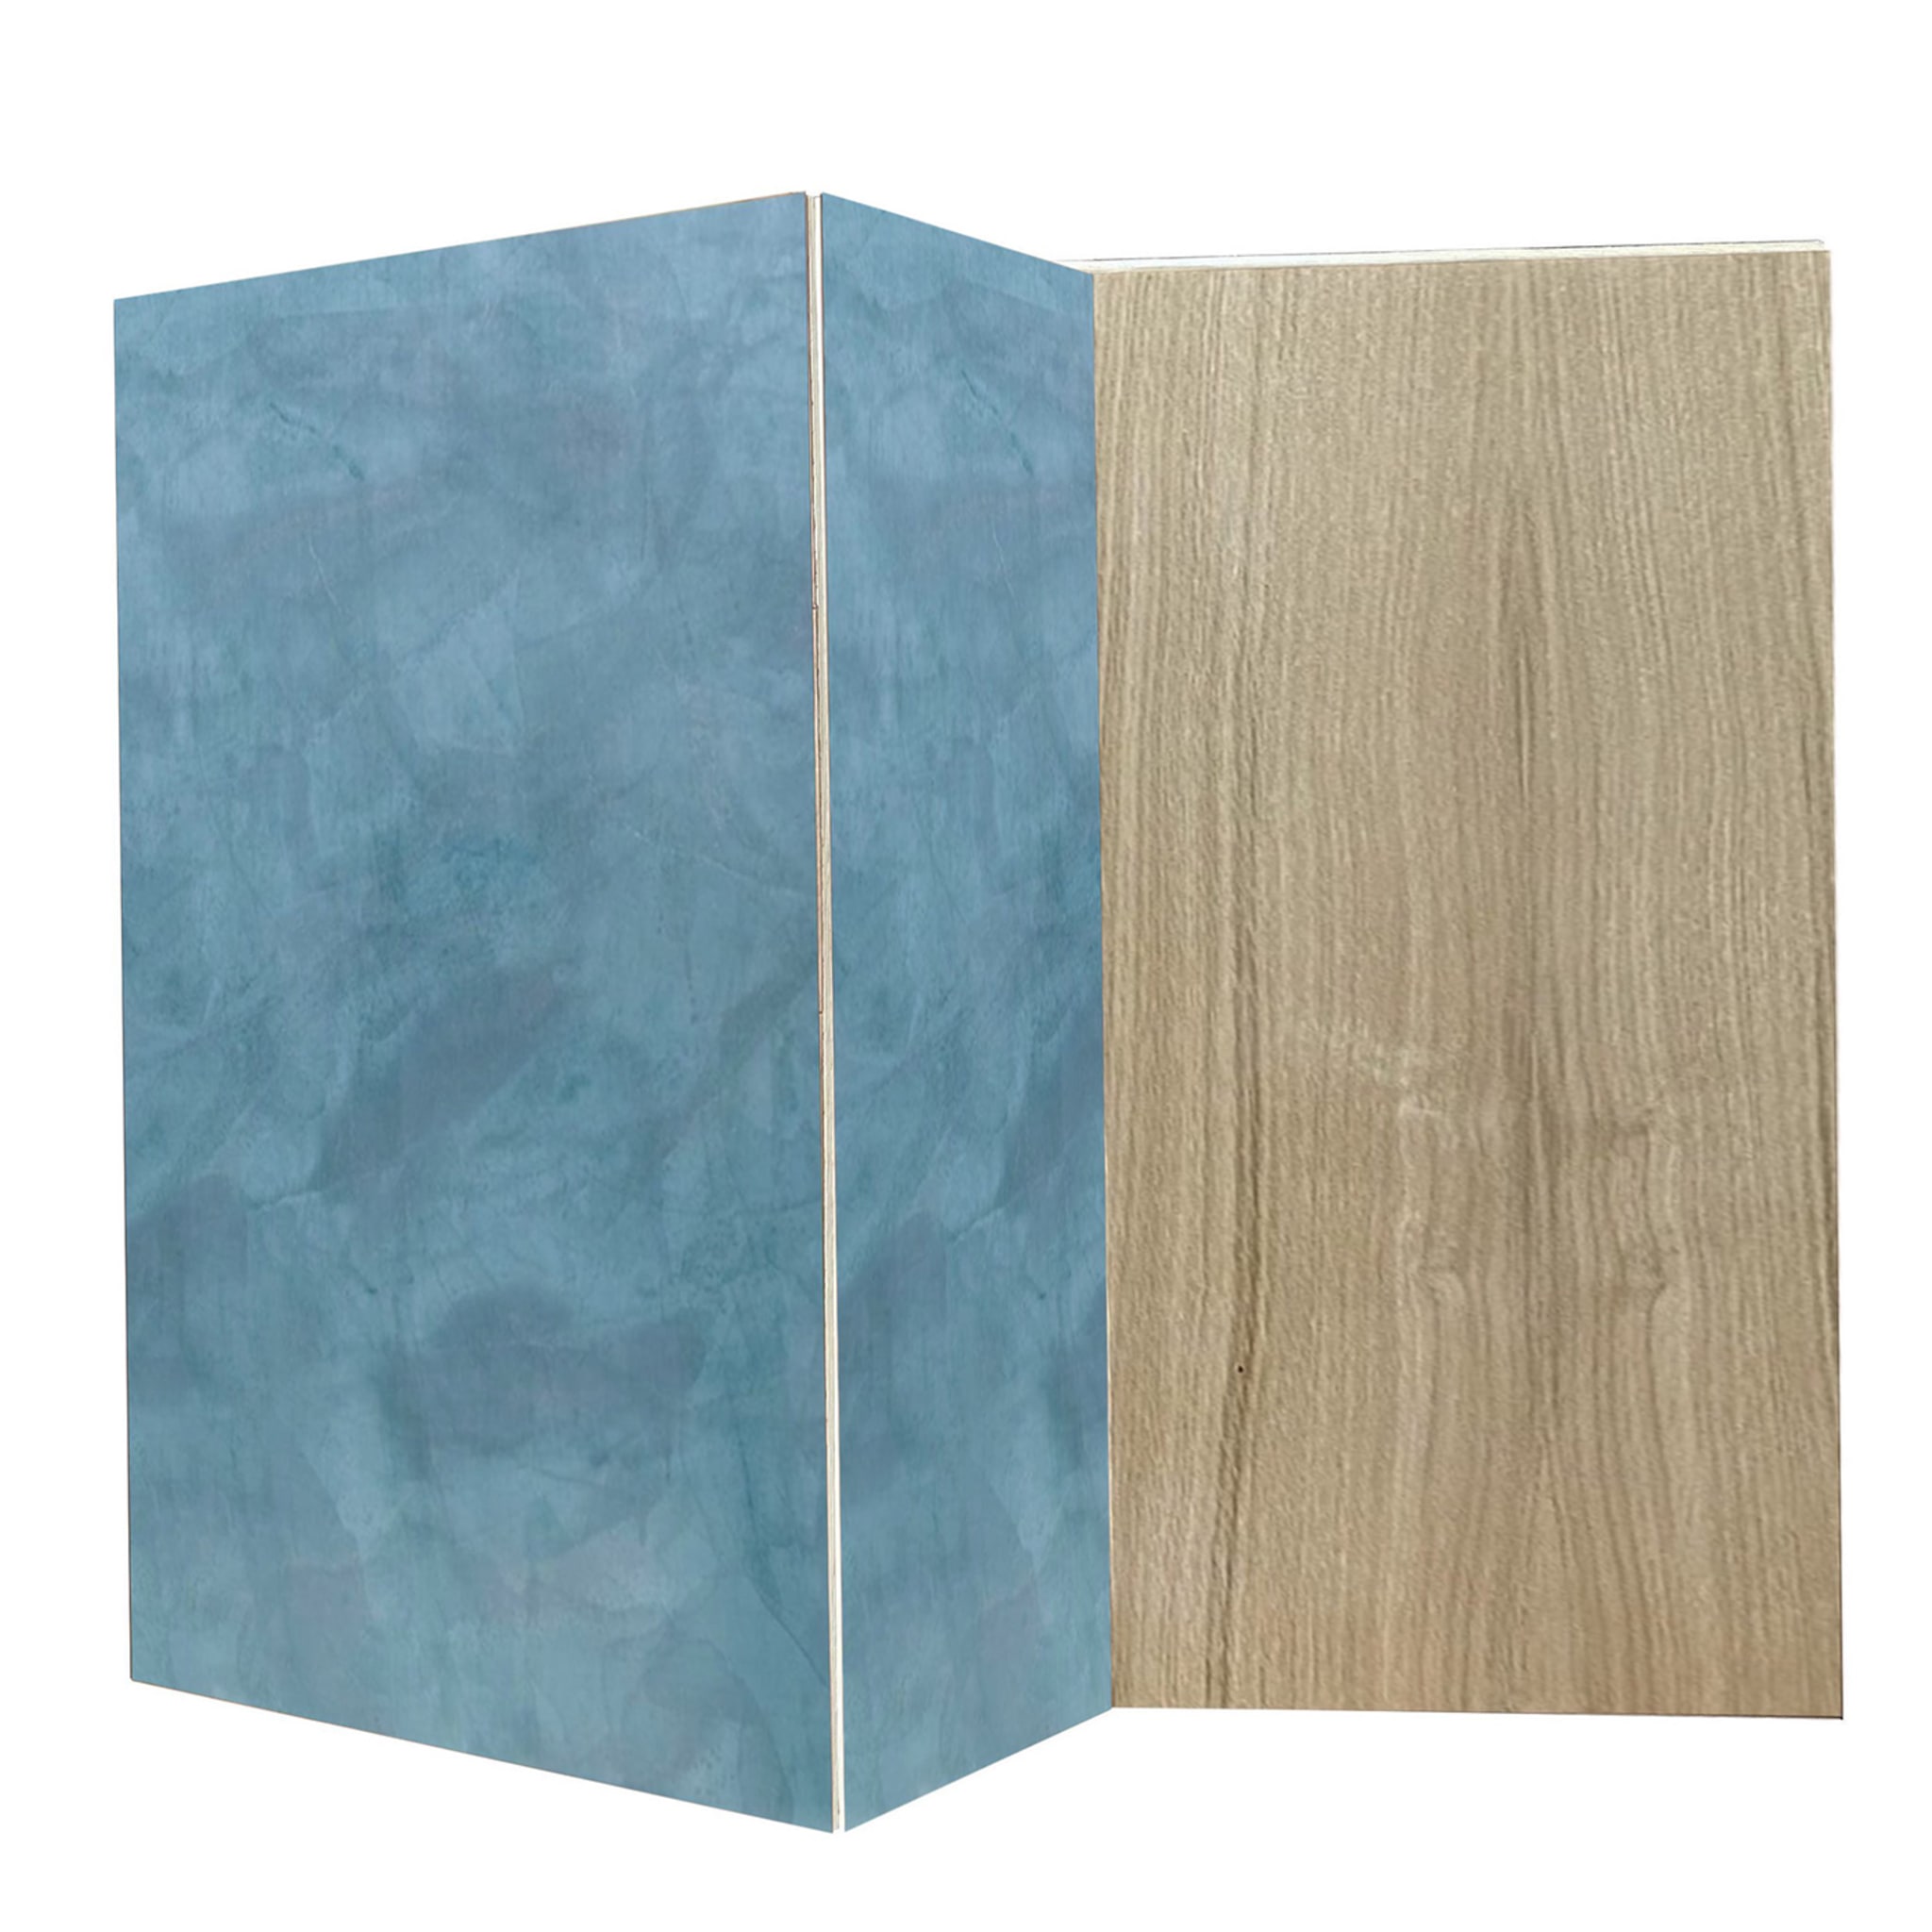 Boccadarno Sei 4-Door Blue Sideboard by Meccani Studio - Alternative view 3